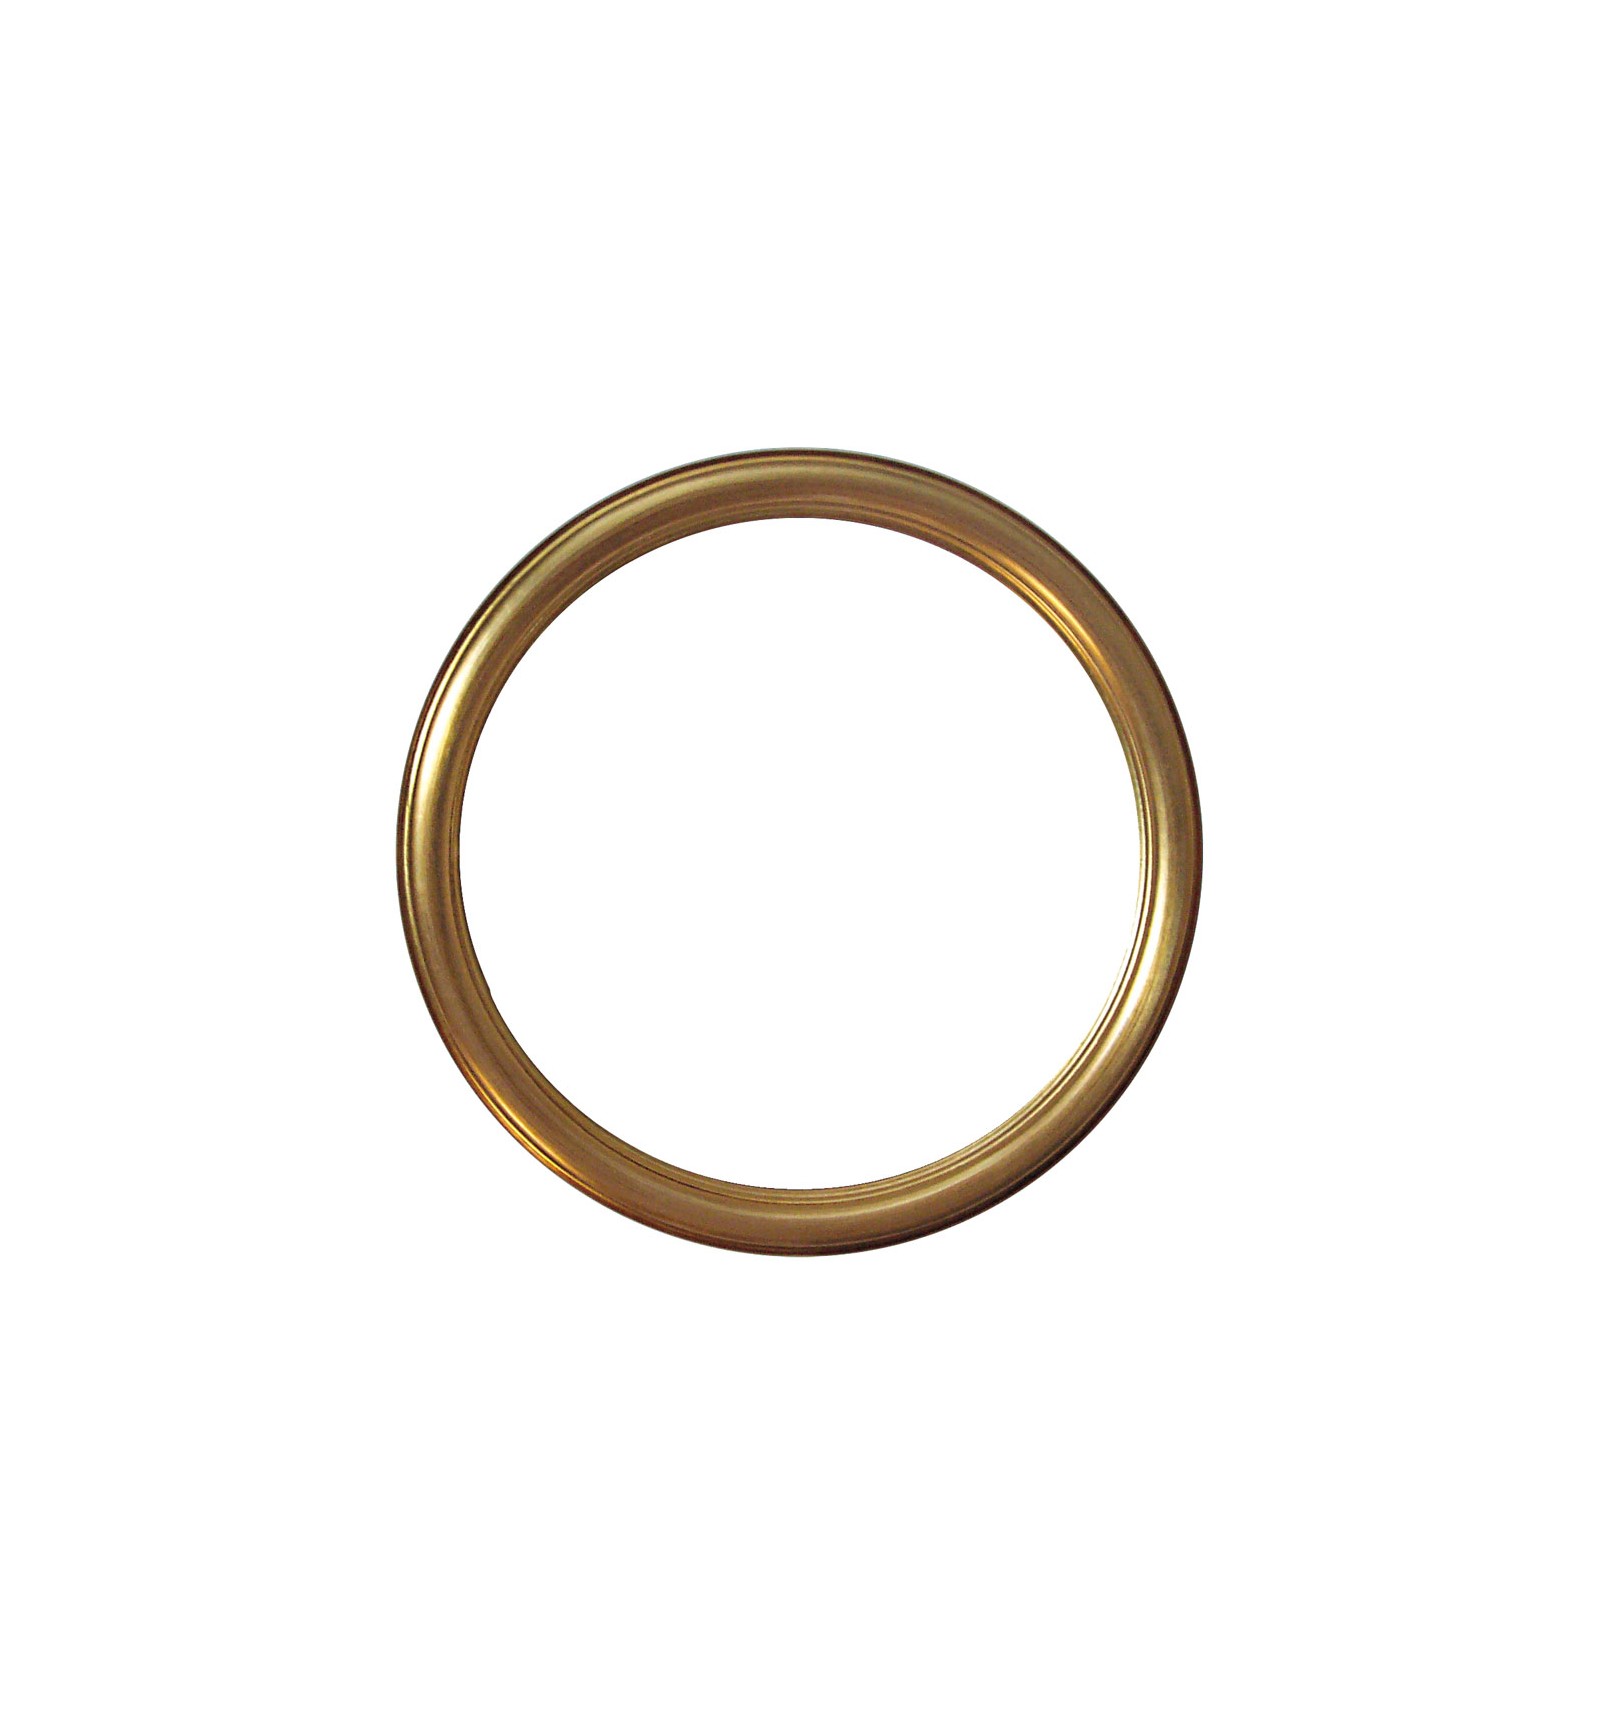 Cornice rotonda in legno, oro da 60 cm